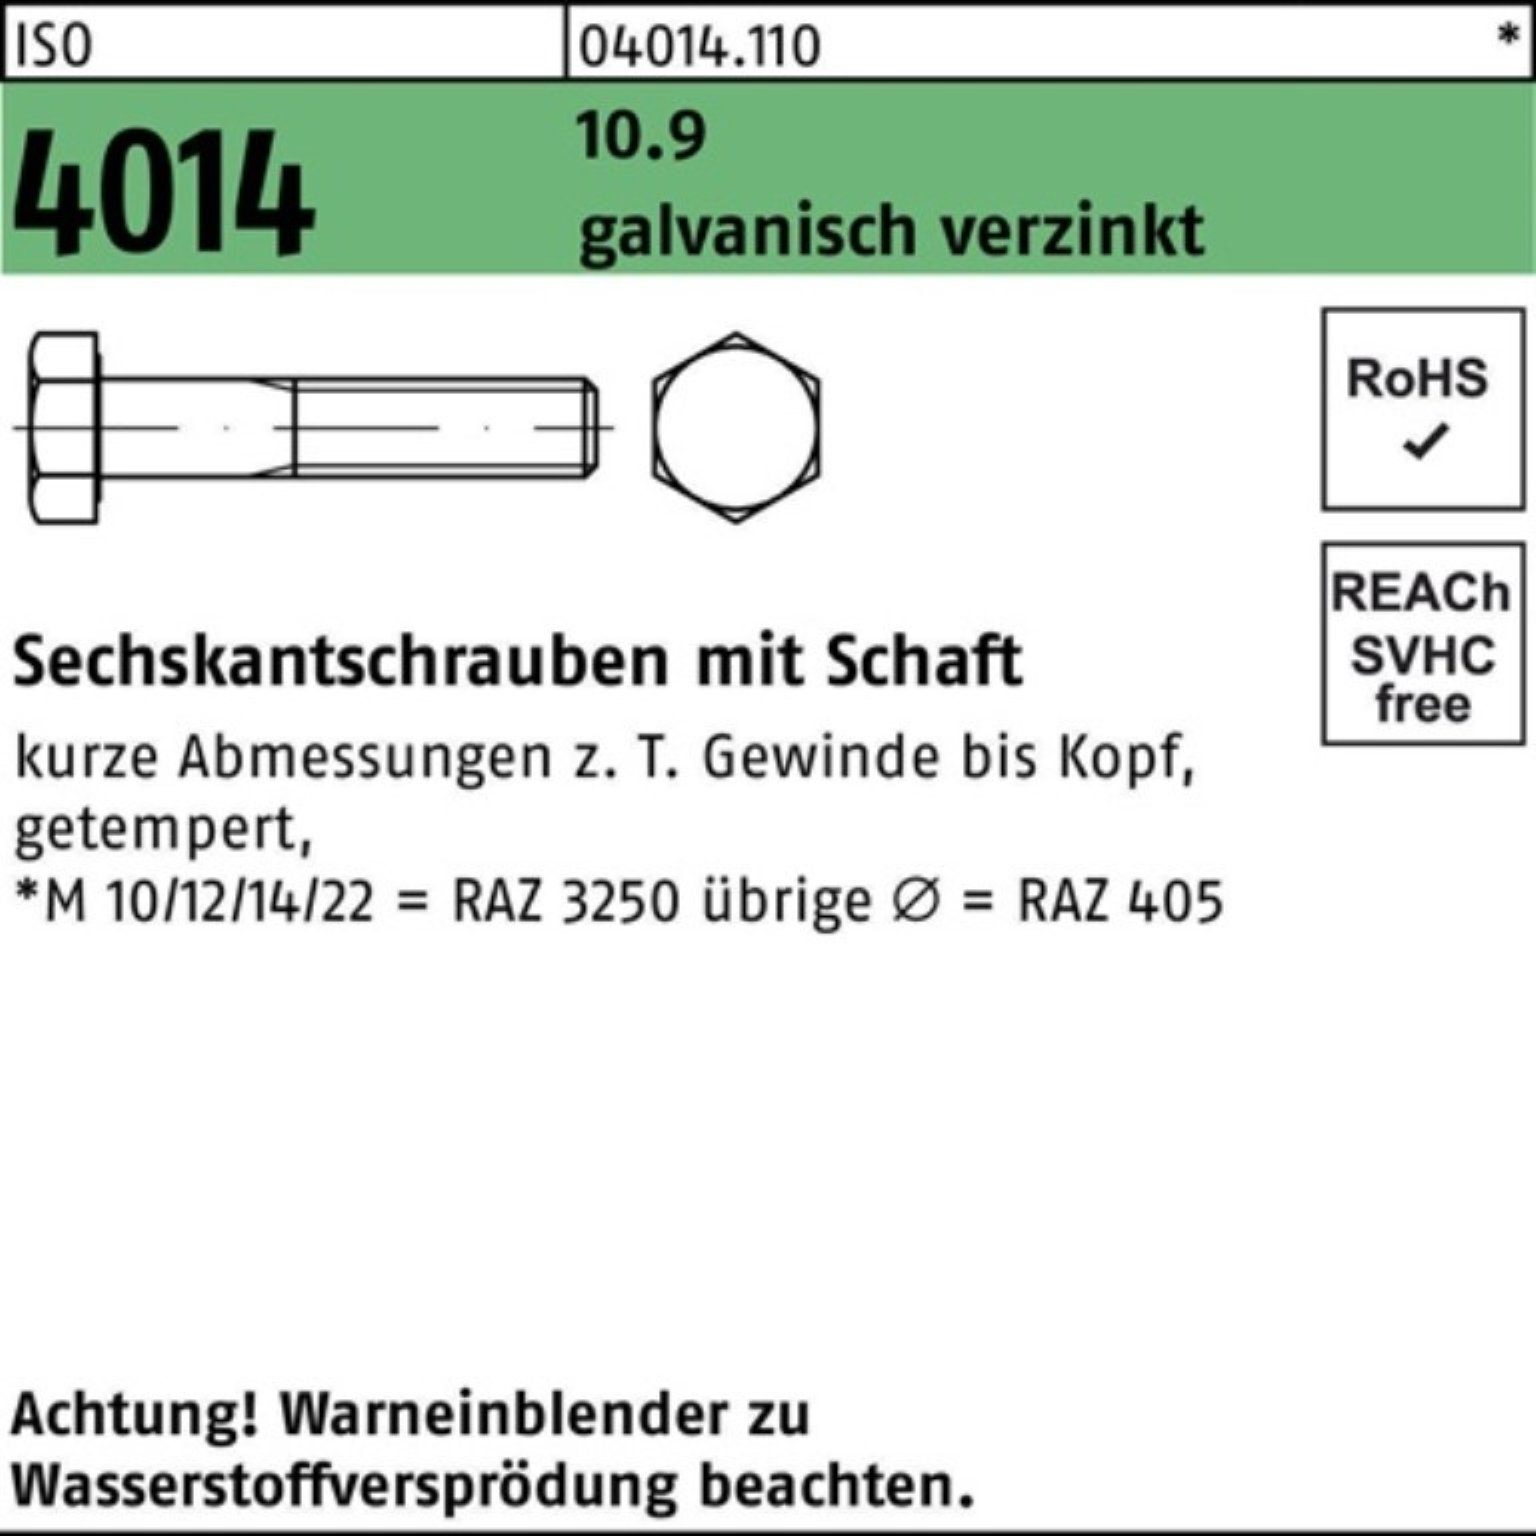 100er Sechskantschraube 4014 ISO 2 Bufab Sechskantschraube M16x 80 Schaft 10.9 galv.verz. Pack